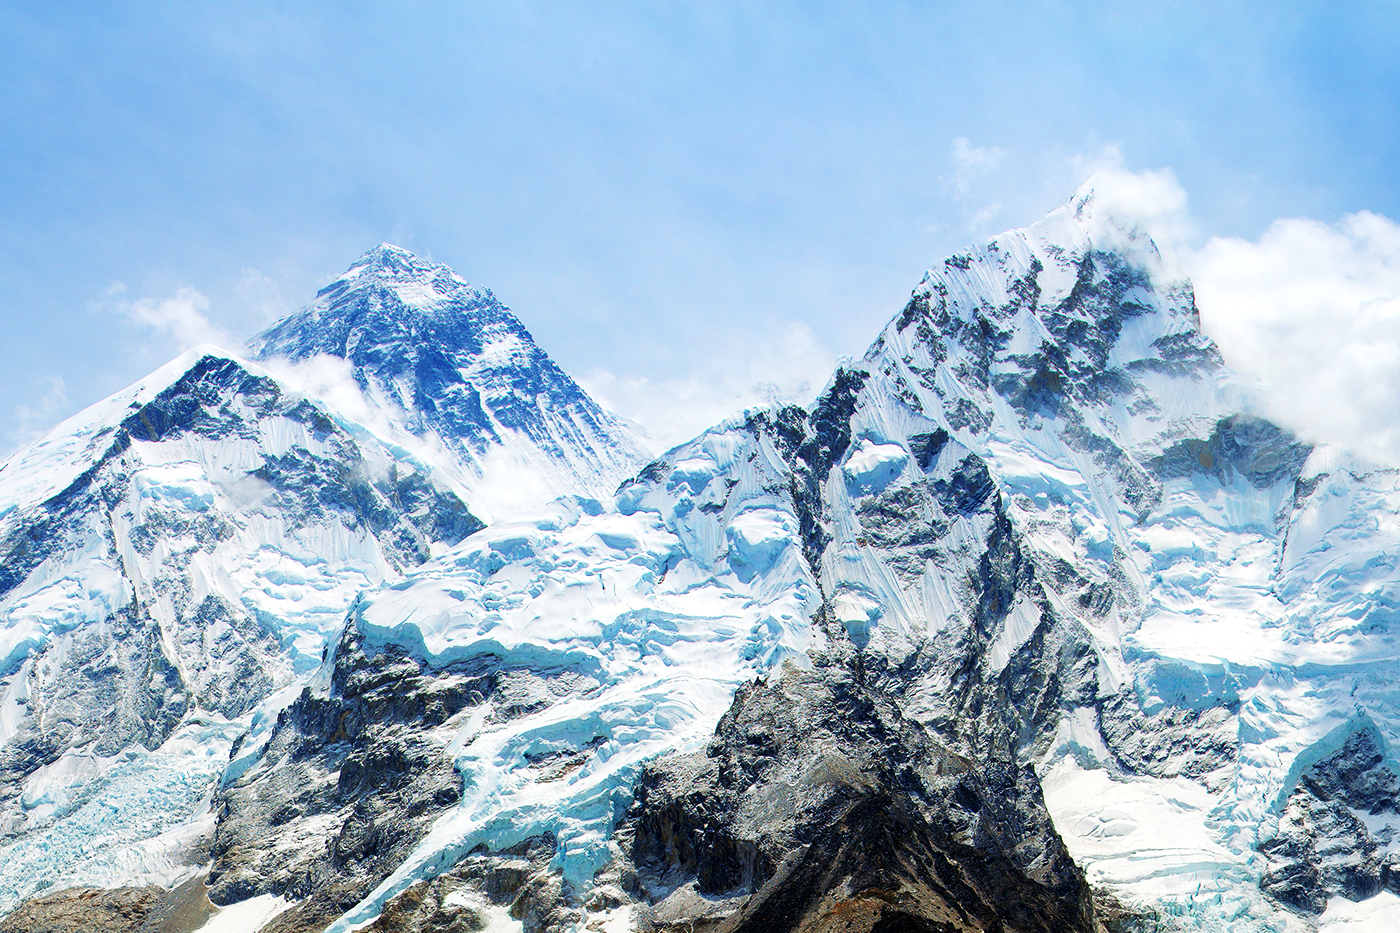 Khumbu-gletsjer Mount Everest basecamp